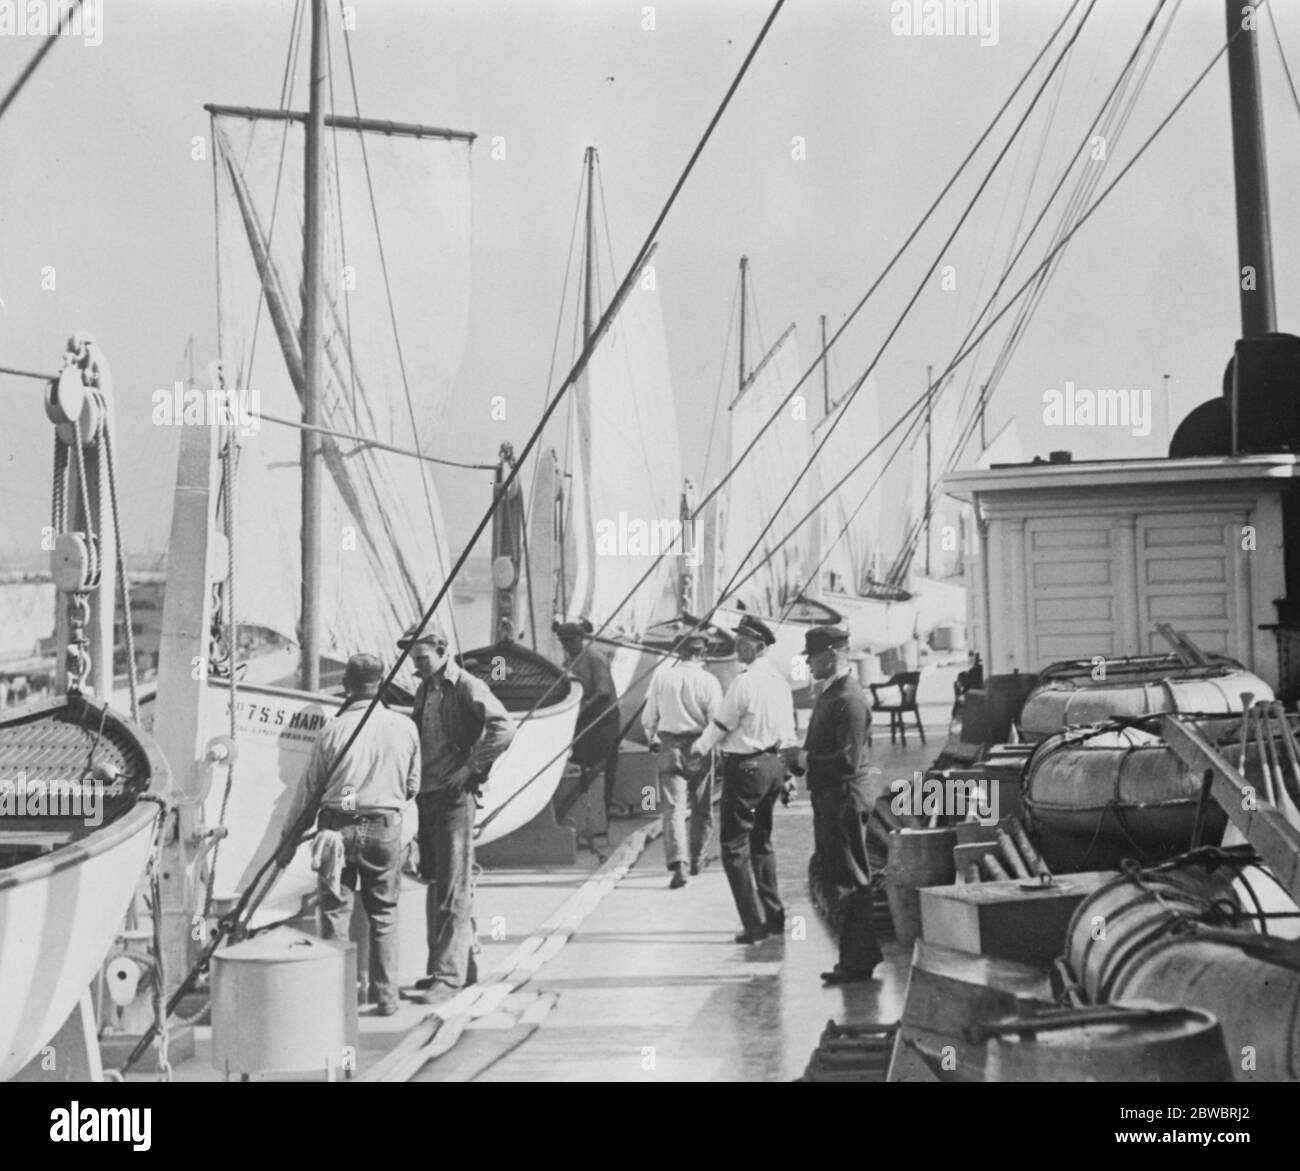 Neues Segellife Boot gibt Liner ein queeres Aussehen EIN Deck Blick auf den Pazifik-Liner Harvard jetzt im Trockendock in Los Angeles , wo sie mit Segel-Rettungsboote ausgestattet wird 12 Februar 1926 Stockfoto